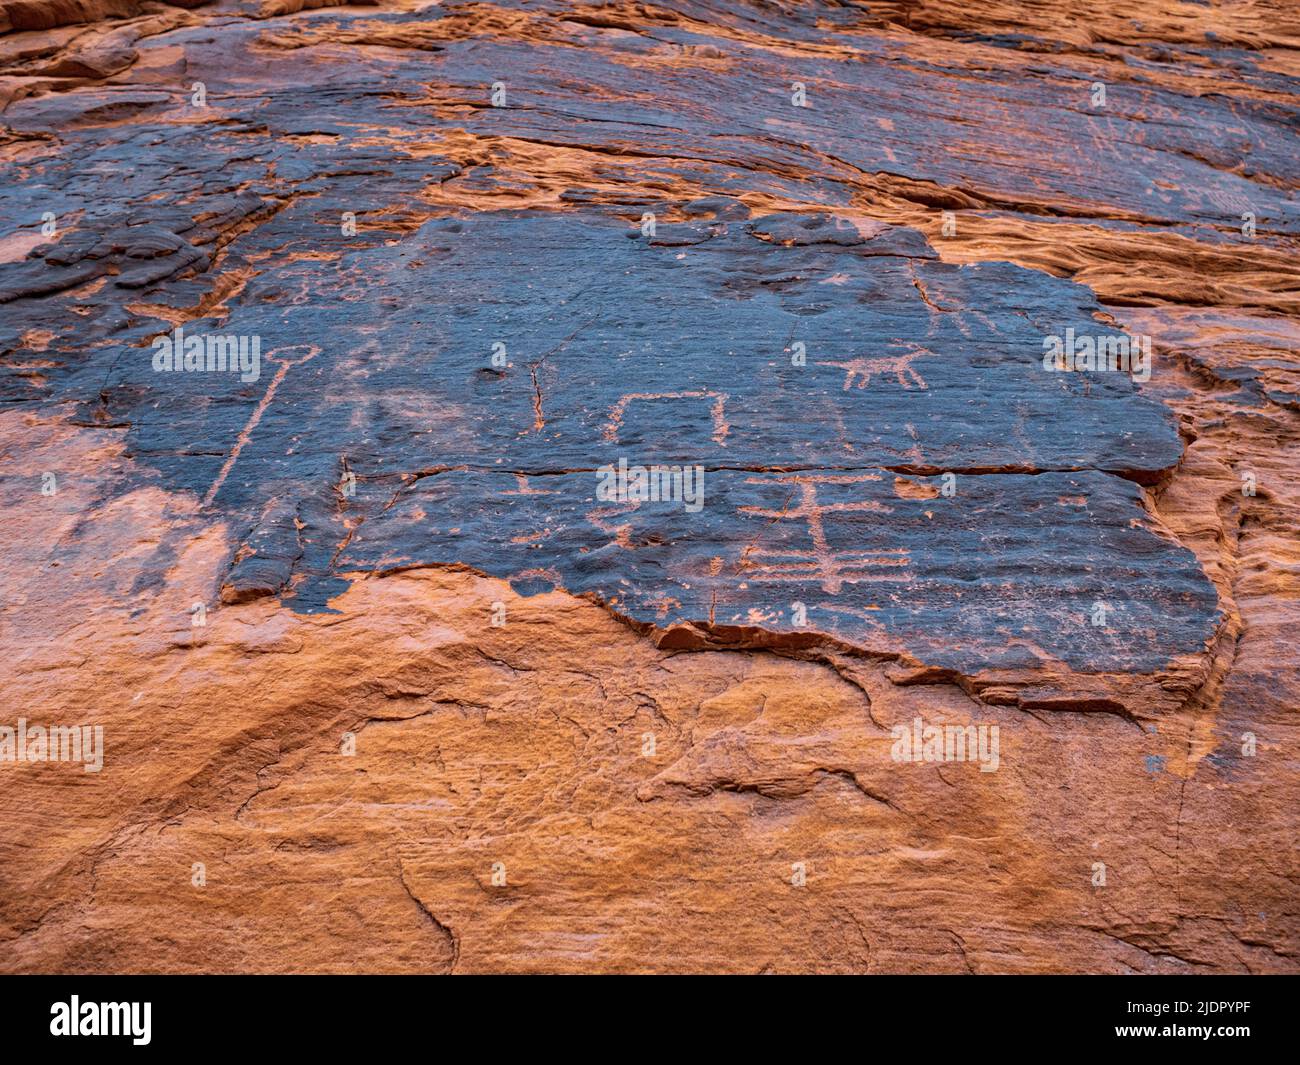 Nahaufnahme von Petroglyphen, die durch Wüstenlack geschnitzt wurden, so dass das rote Gestein des aztekischen Sandsteins durch das Petroglyph Canyon Valley of Fire Nevada leuchtet Stockfoto